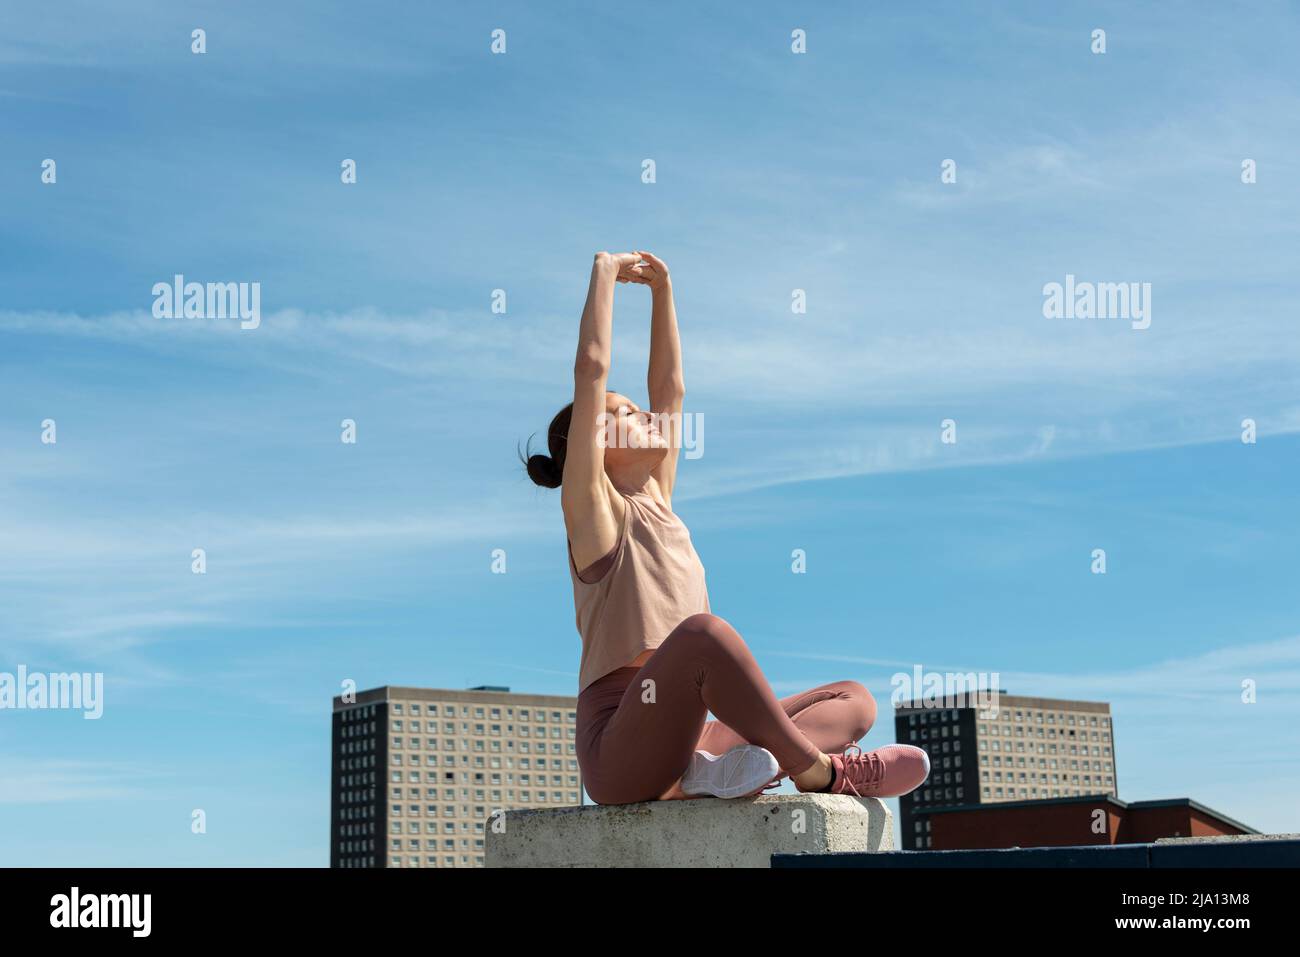 Femme sportive assise et s'étirant avec ses bras au-dessus de sa tête, en milieu urbain. Banque D'Images